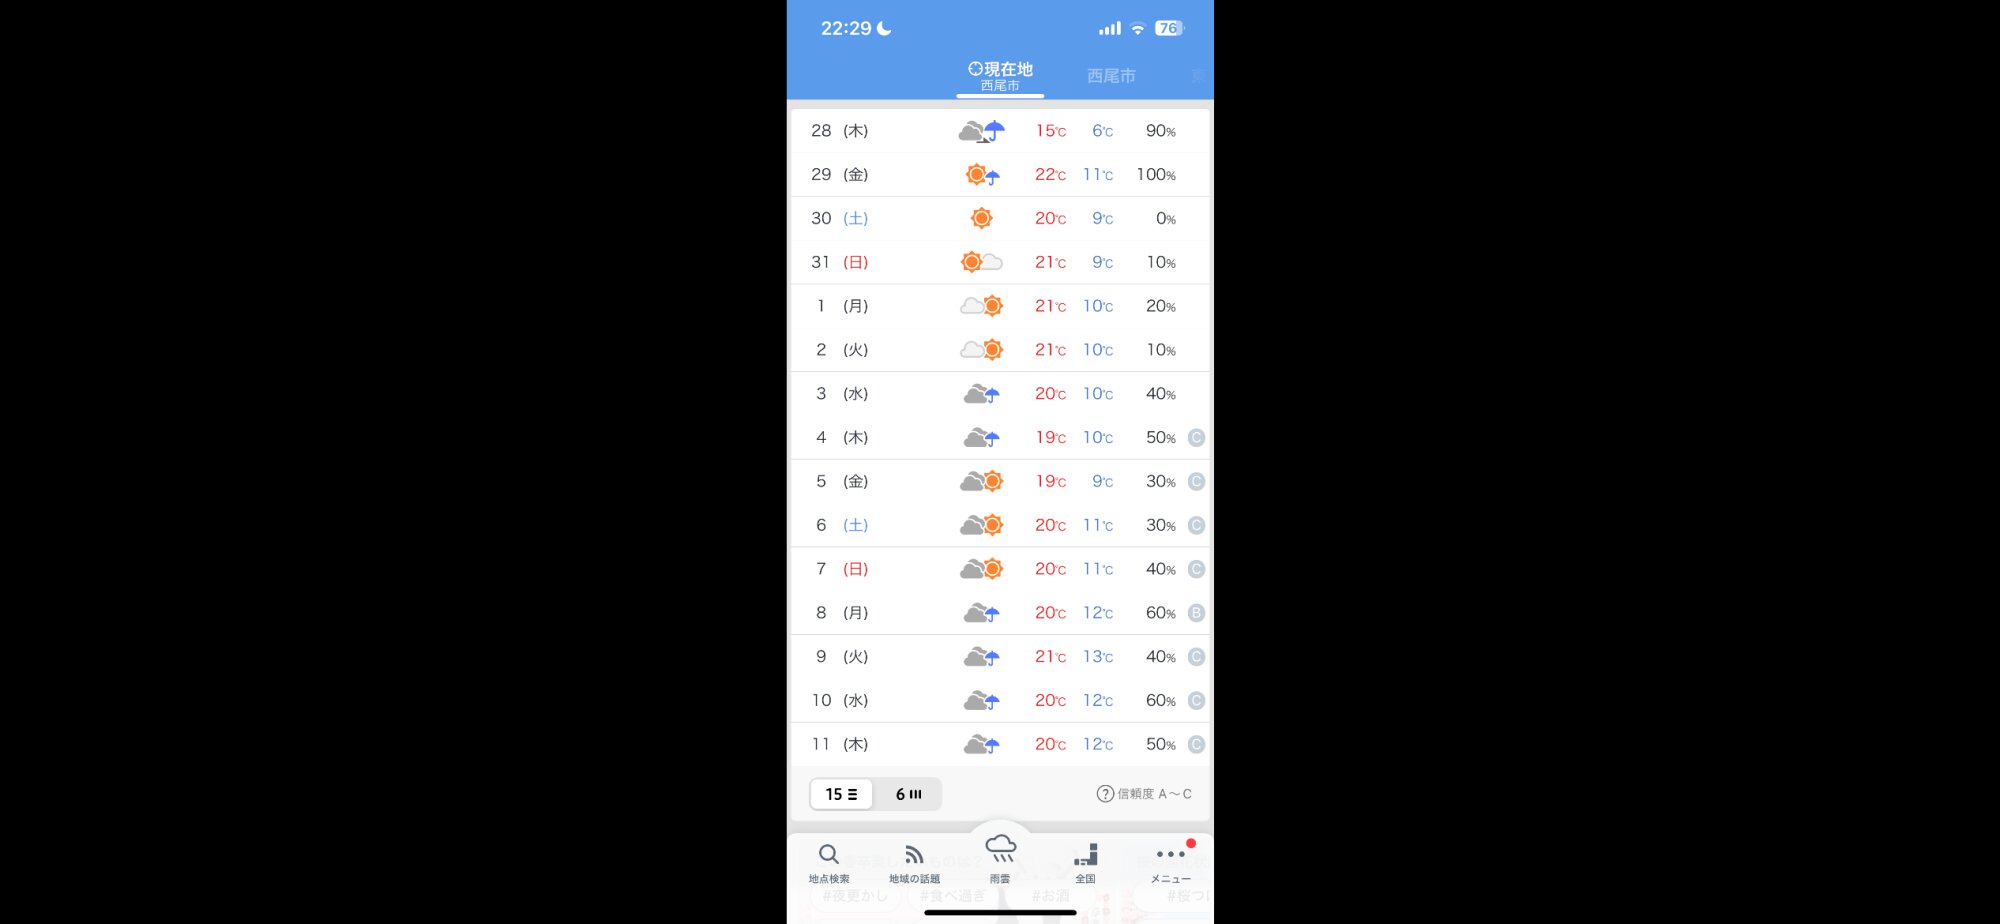 私は【Yahoo!天気】アプリを使っています。無料だし地点指定もできて使いやすく1時間単位から半月先までの天気予報も見られるので毎日何度も見て作業スケジュールを考えています。